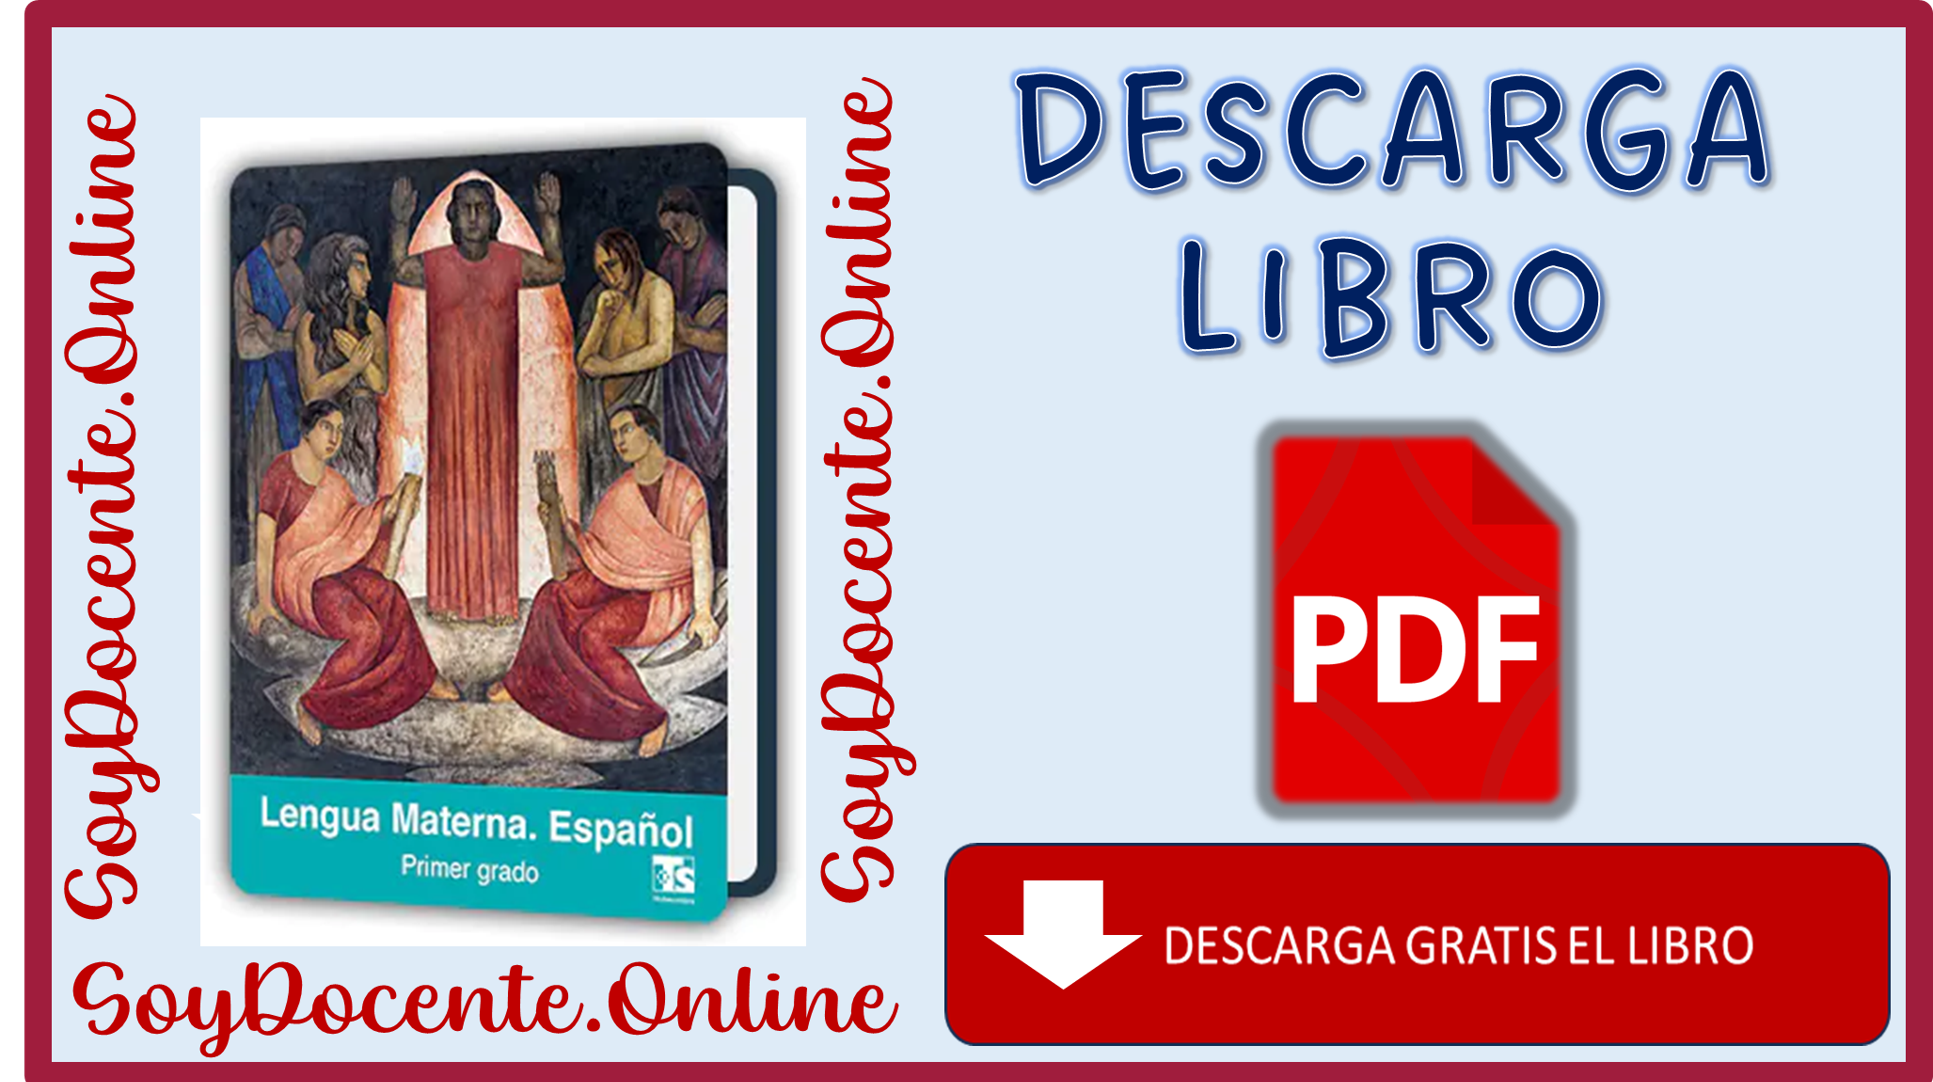 Aquí puedes descargar el Libro de Lengua Materna. Español primer grado de Telesecundaria por la SEP, distribuido por la CONALITEG.